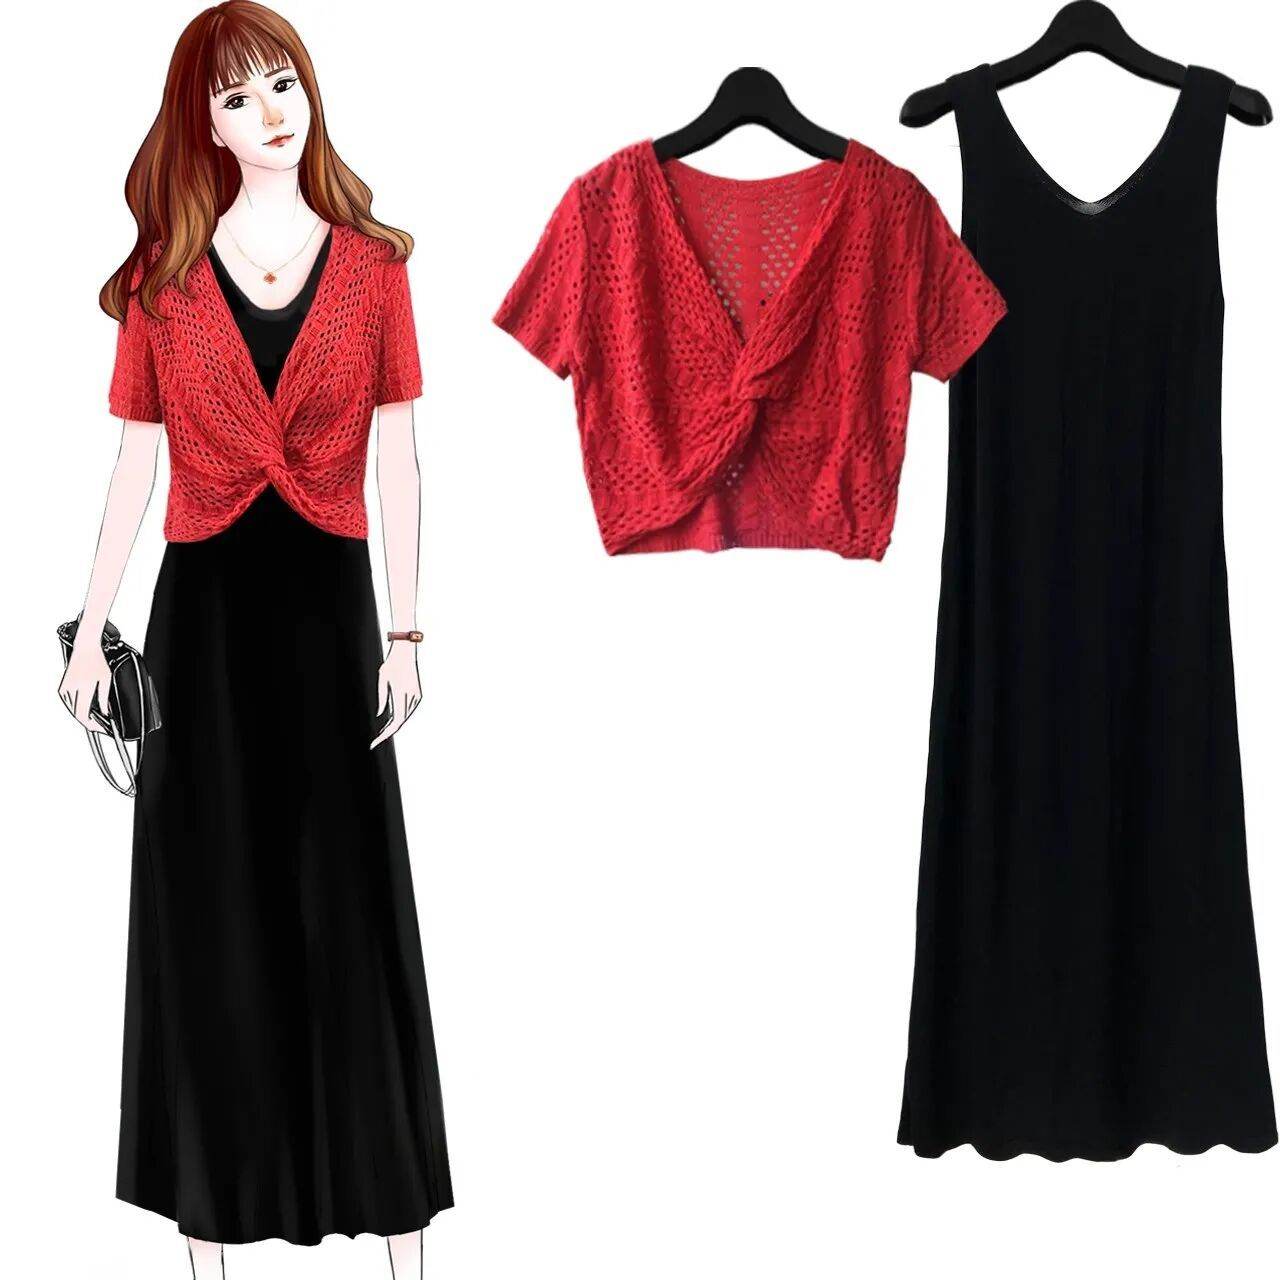 紅色短袖+黑色裙子